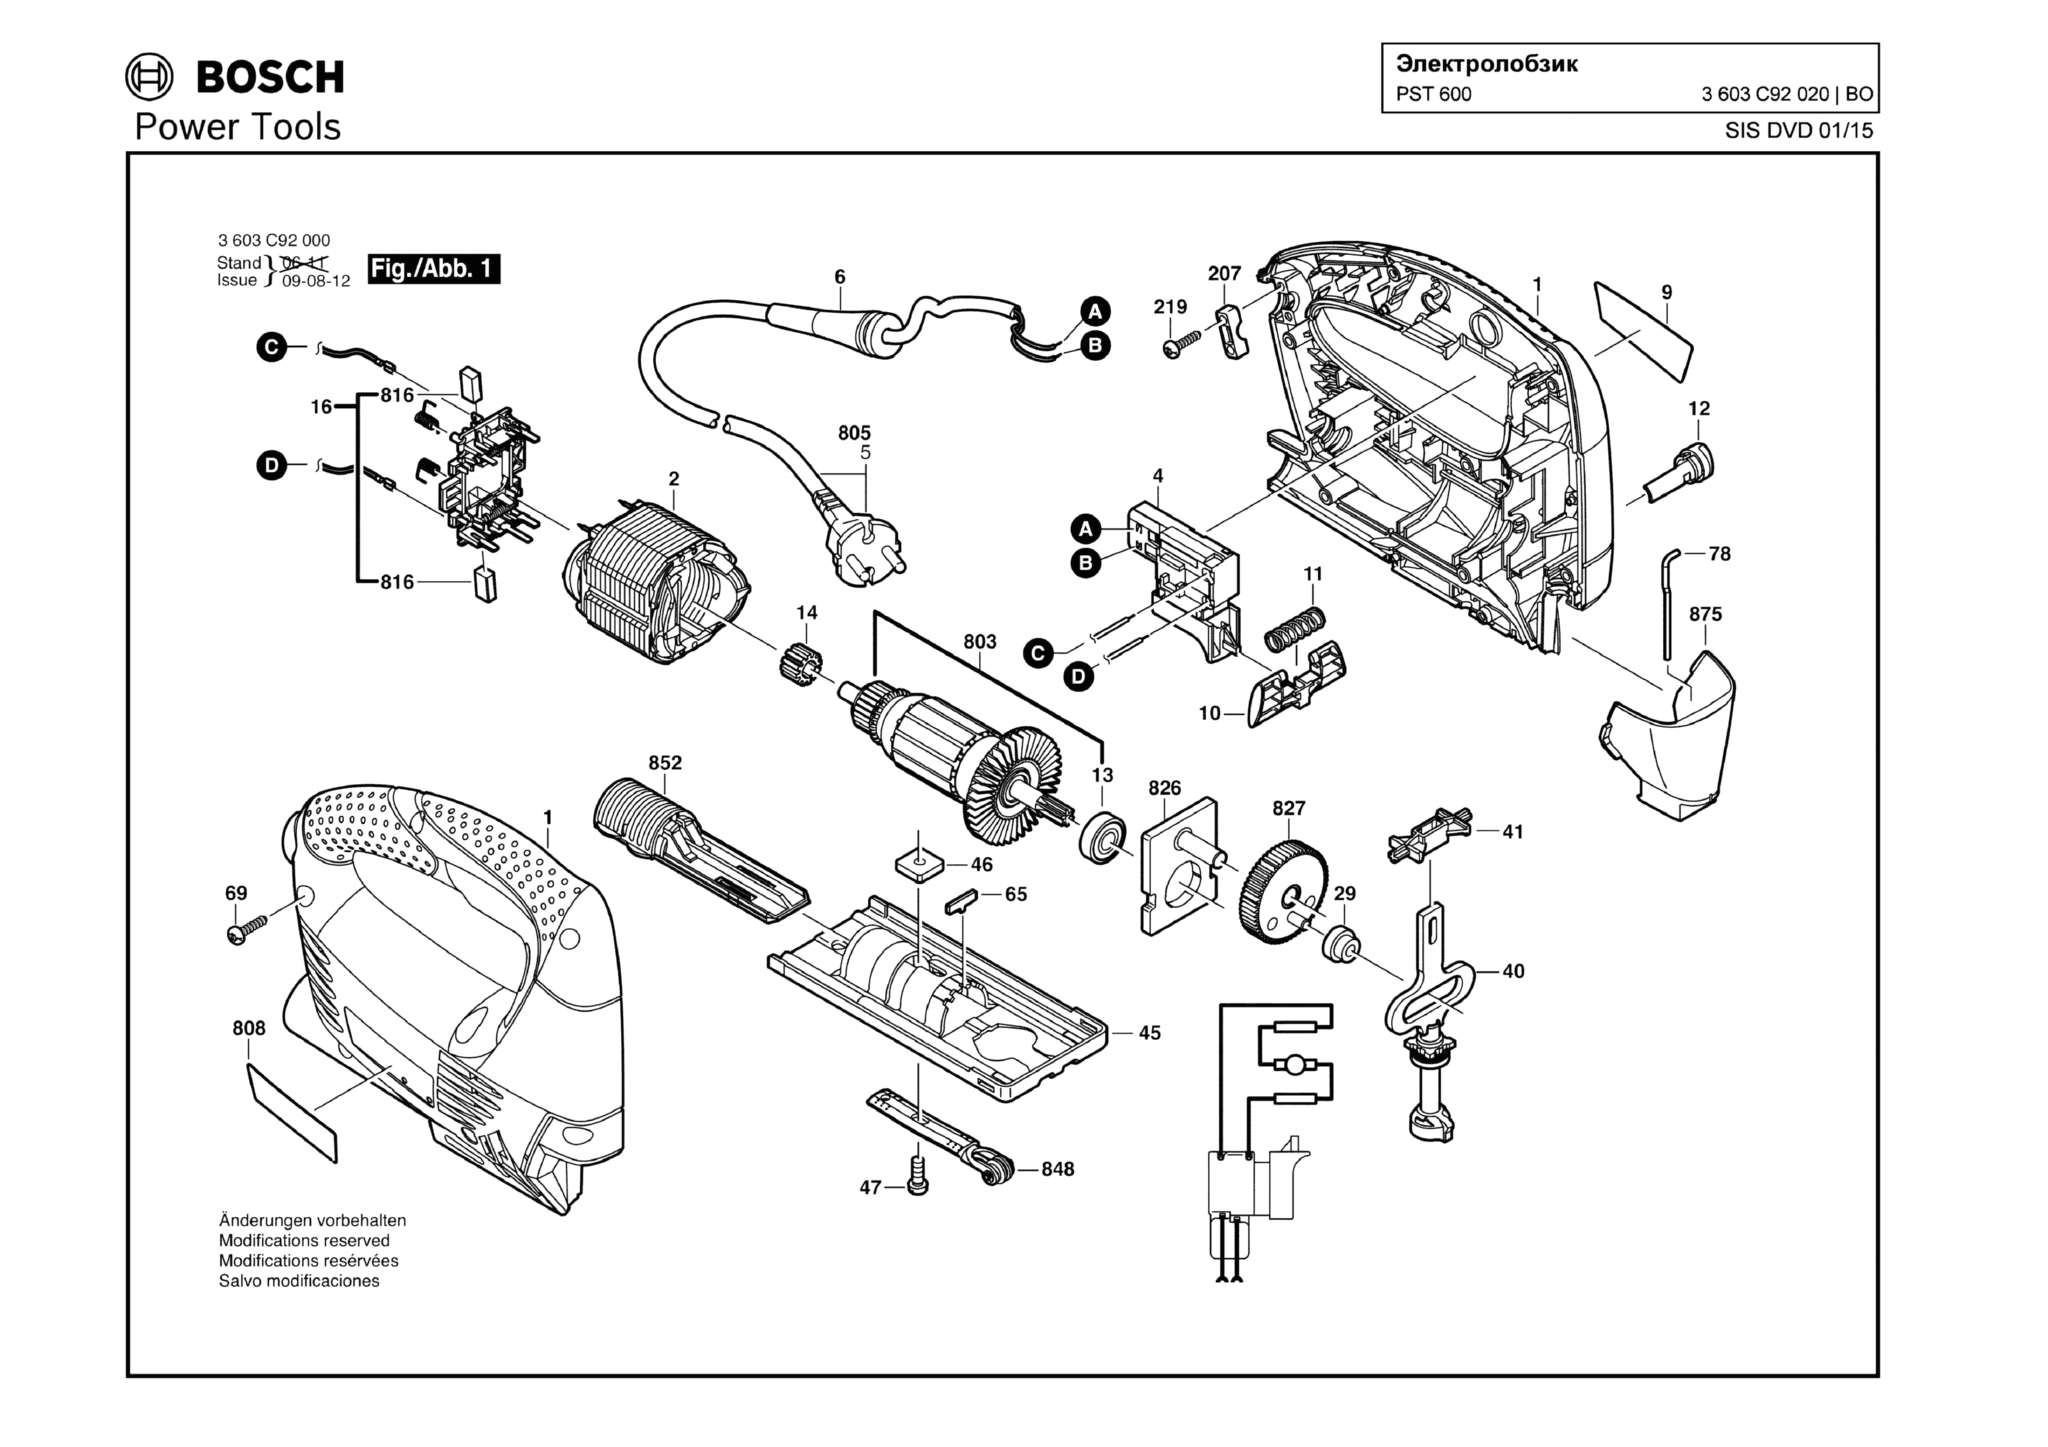 Запчасти, схема и деталировка Bosch PST 600 (ТИП 3603C92020)